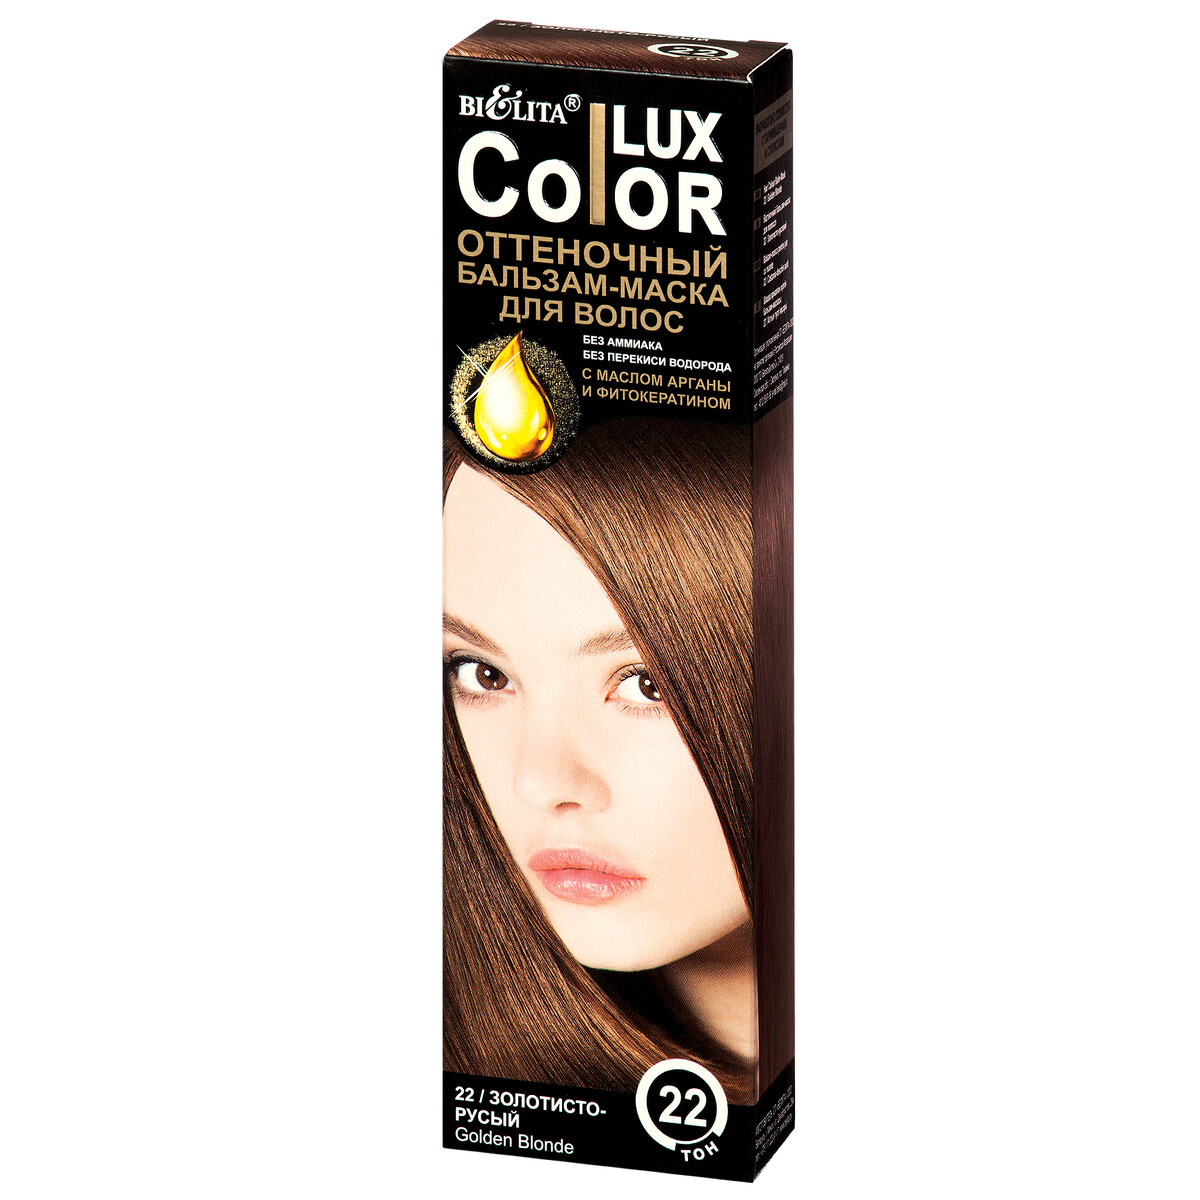 Lux color бальзам оттеночный для волос тон №22 золотисто-русый 100 мл